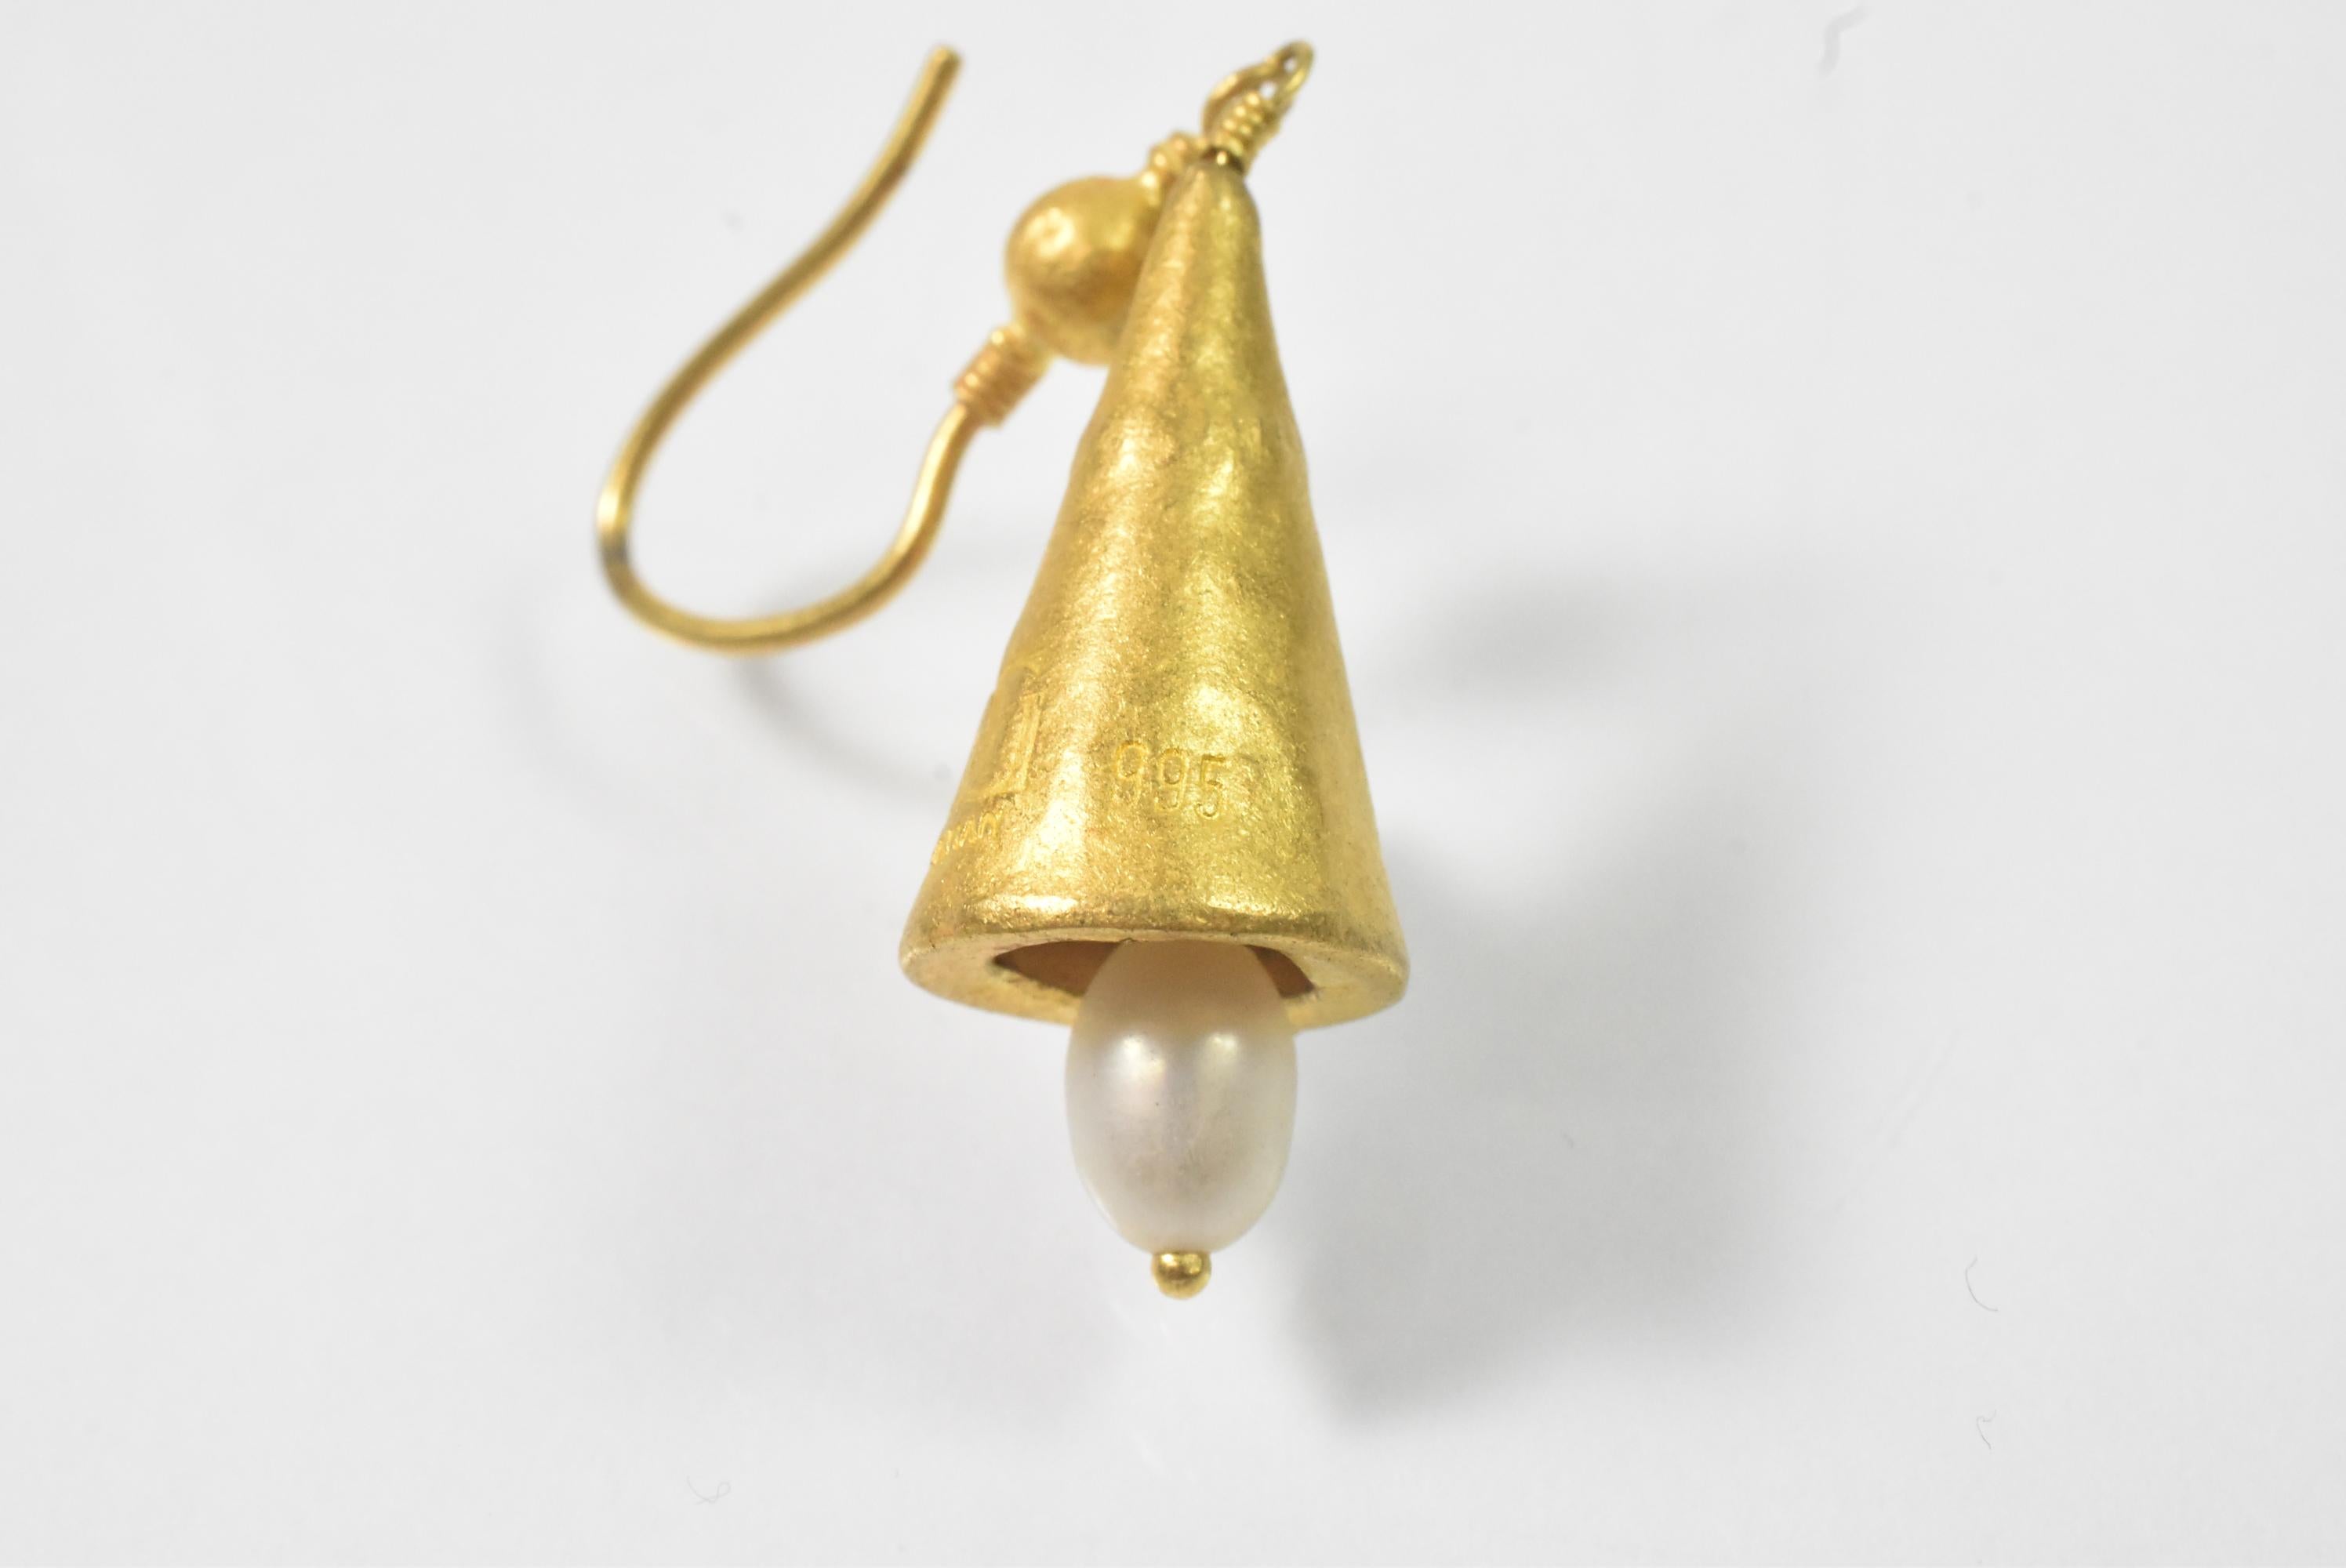 Diese Gurhan Ohrringe sind aus 22 Karat Gold und mit einer versteckten Perle versehen. Der lange Ohrring ist mit 995, Gurhan mit dem charakteristischen Doppel-G-Emblem und E32 gekennzeichnet. 3/8 